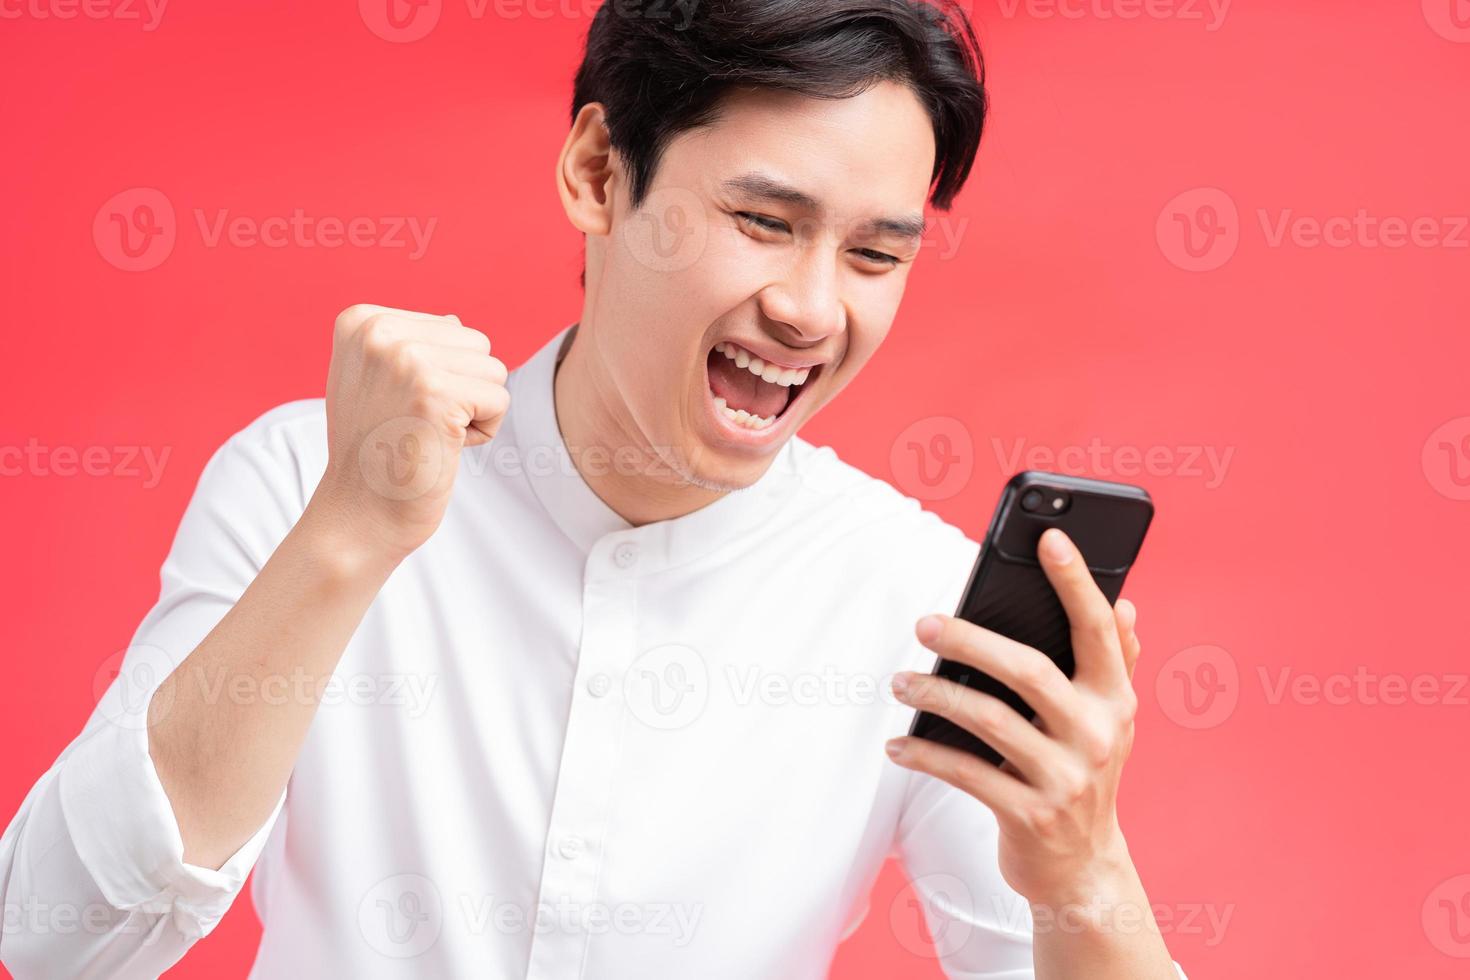 ett foto av mannen som firade sin seger när han fick ett sms på sin mobiltelefon